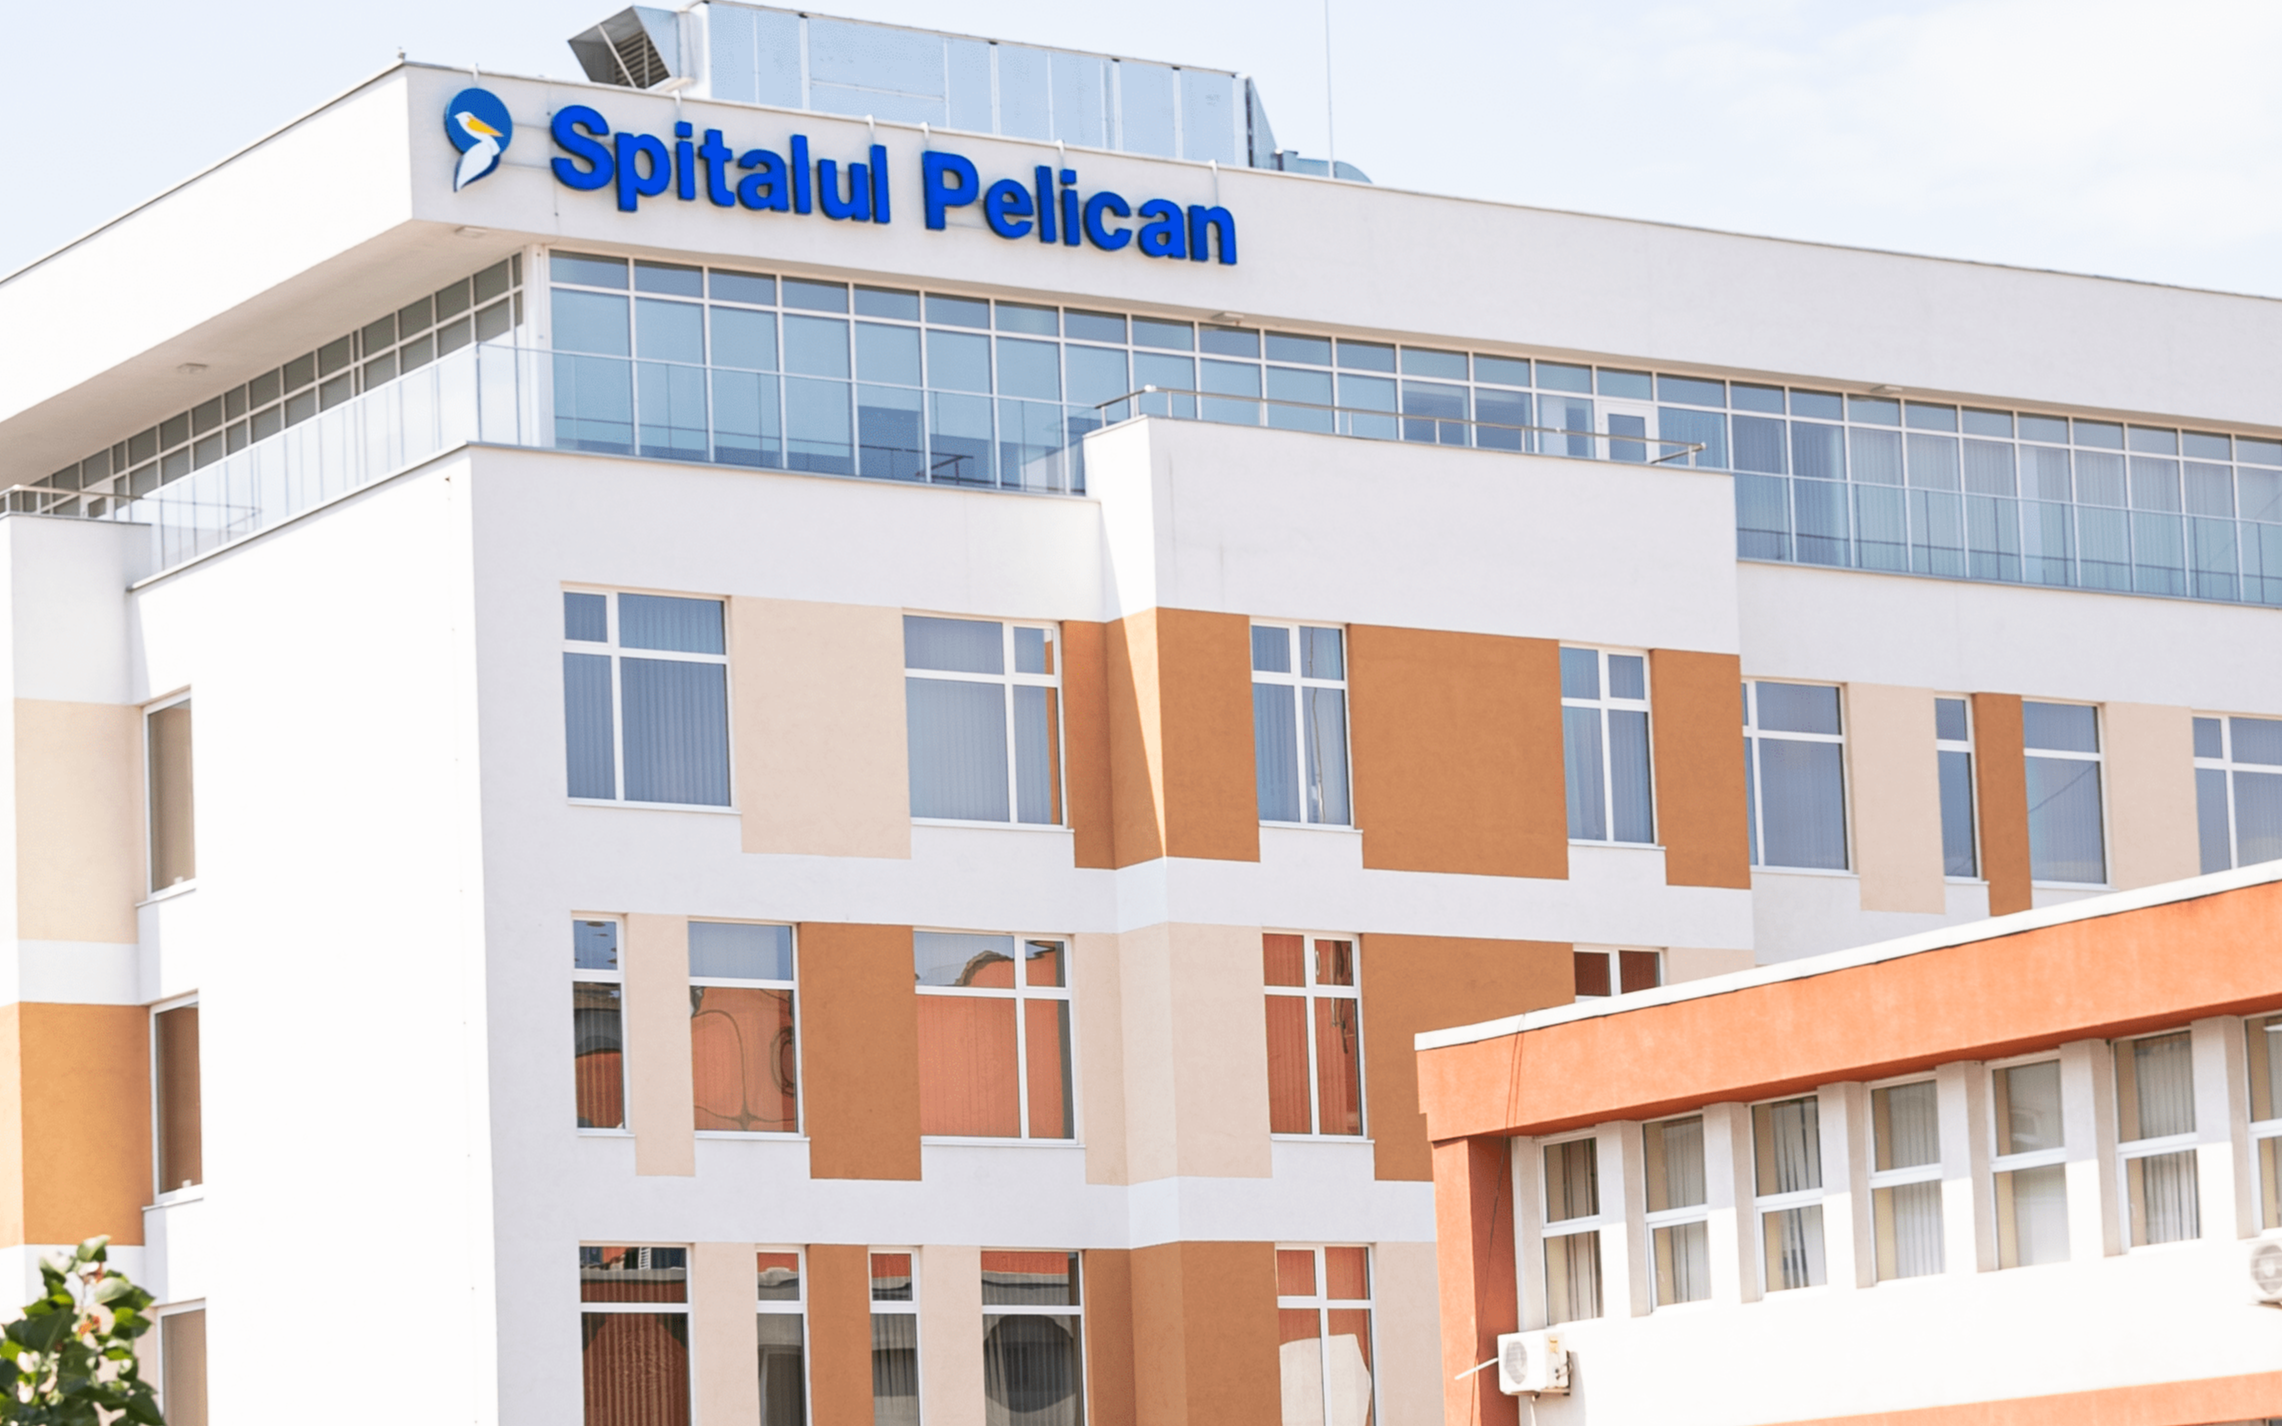 Program de Rusalii la ambulatoriile Spitalului Pelican